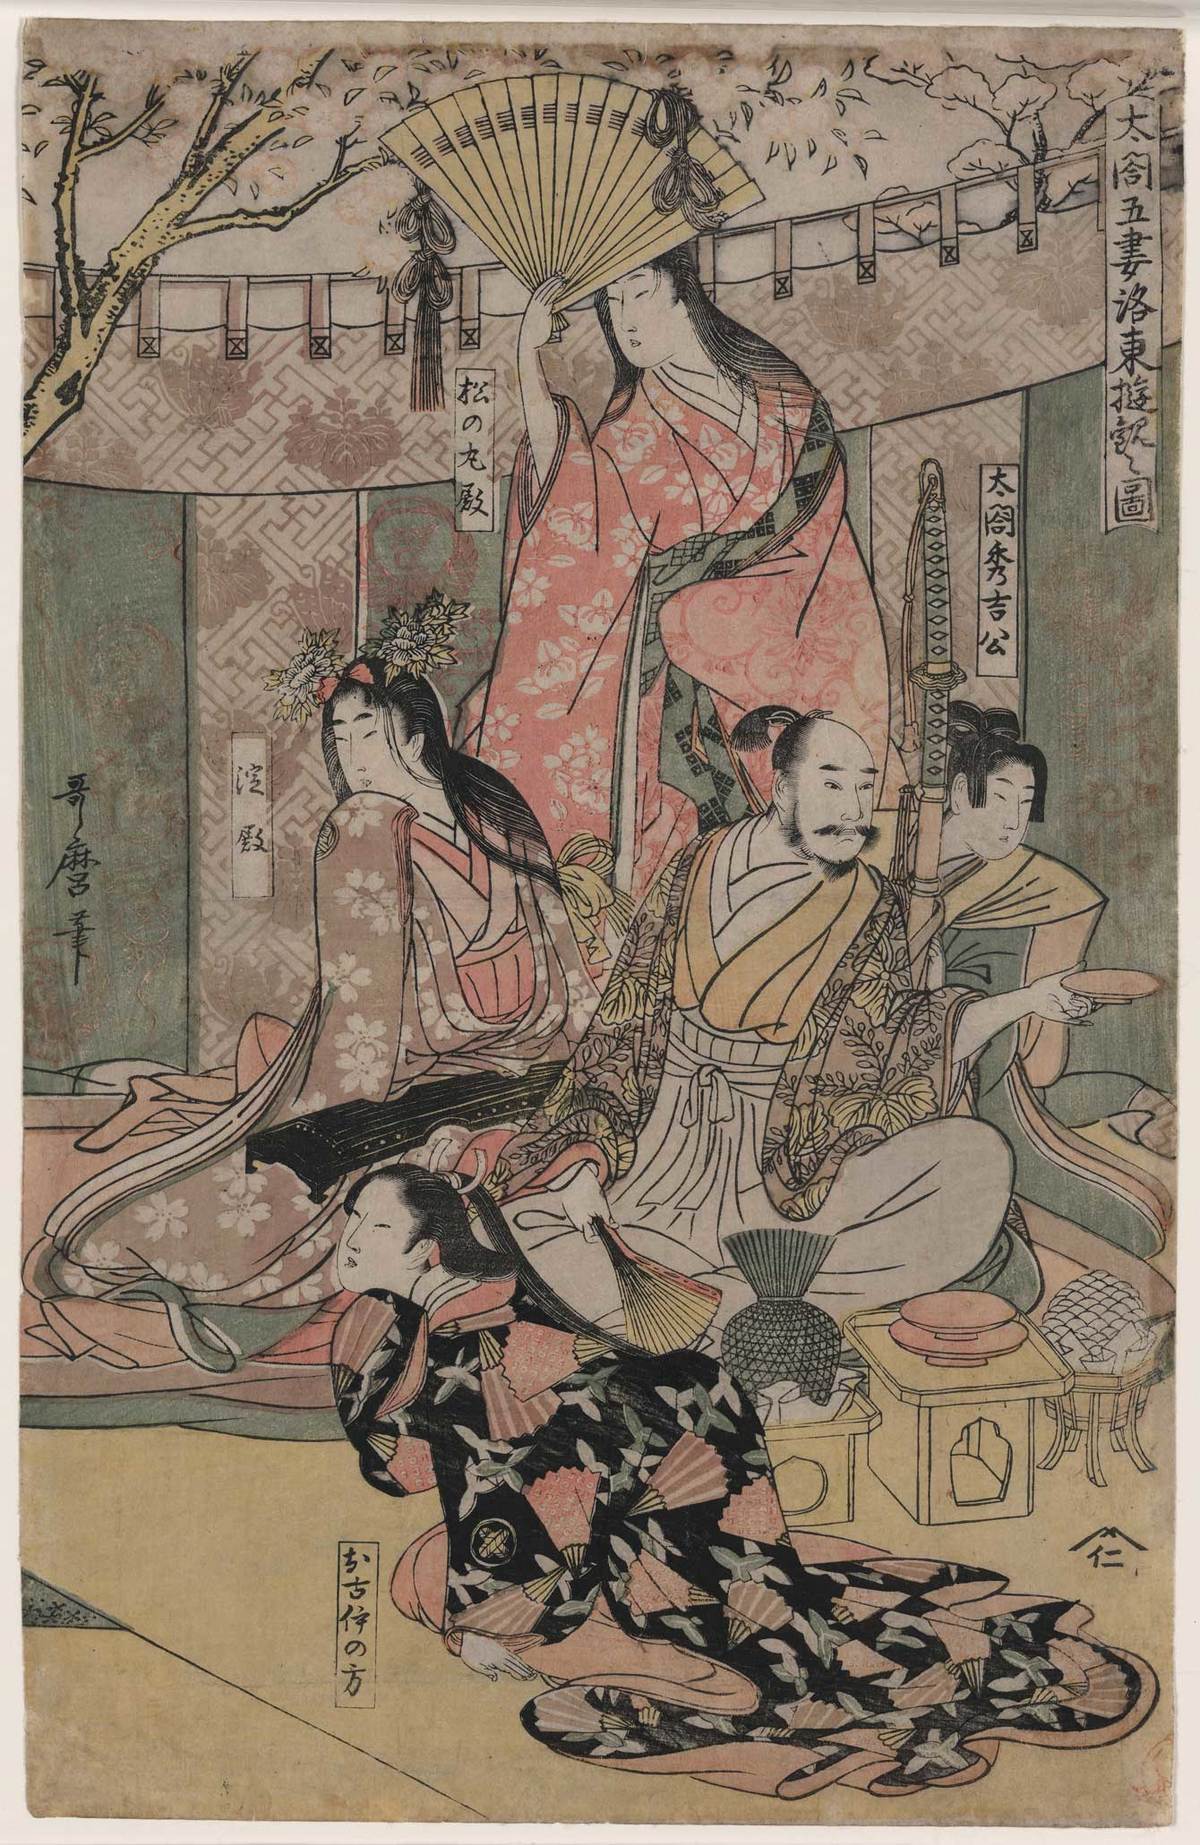 醍醐の花見を題材にした浮世絵。女性の名前は「淀殿」「松の丸殿」「お古伊の方」と記されている